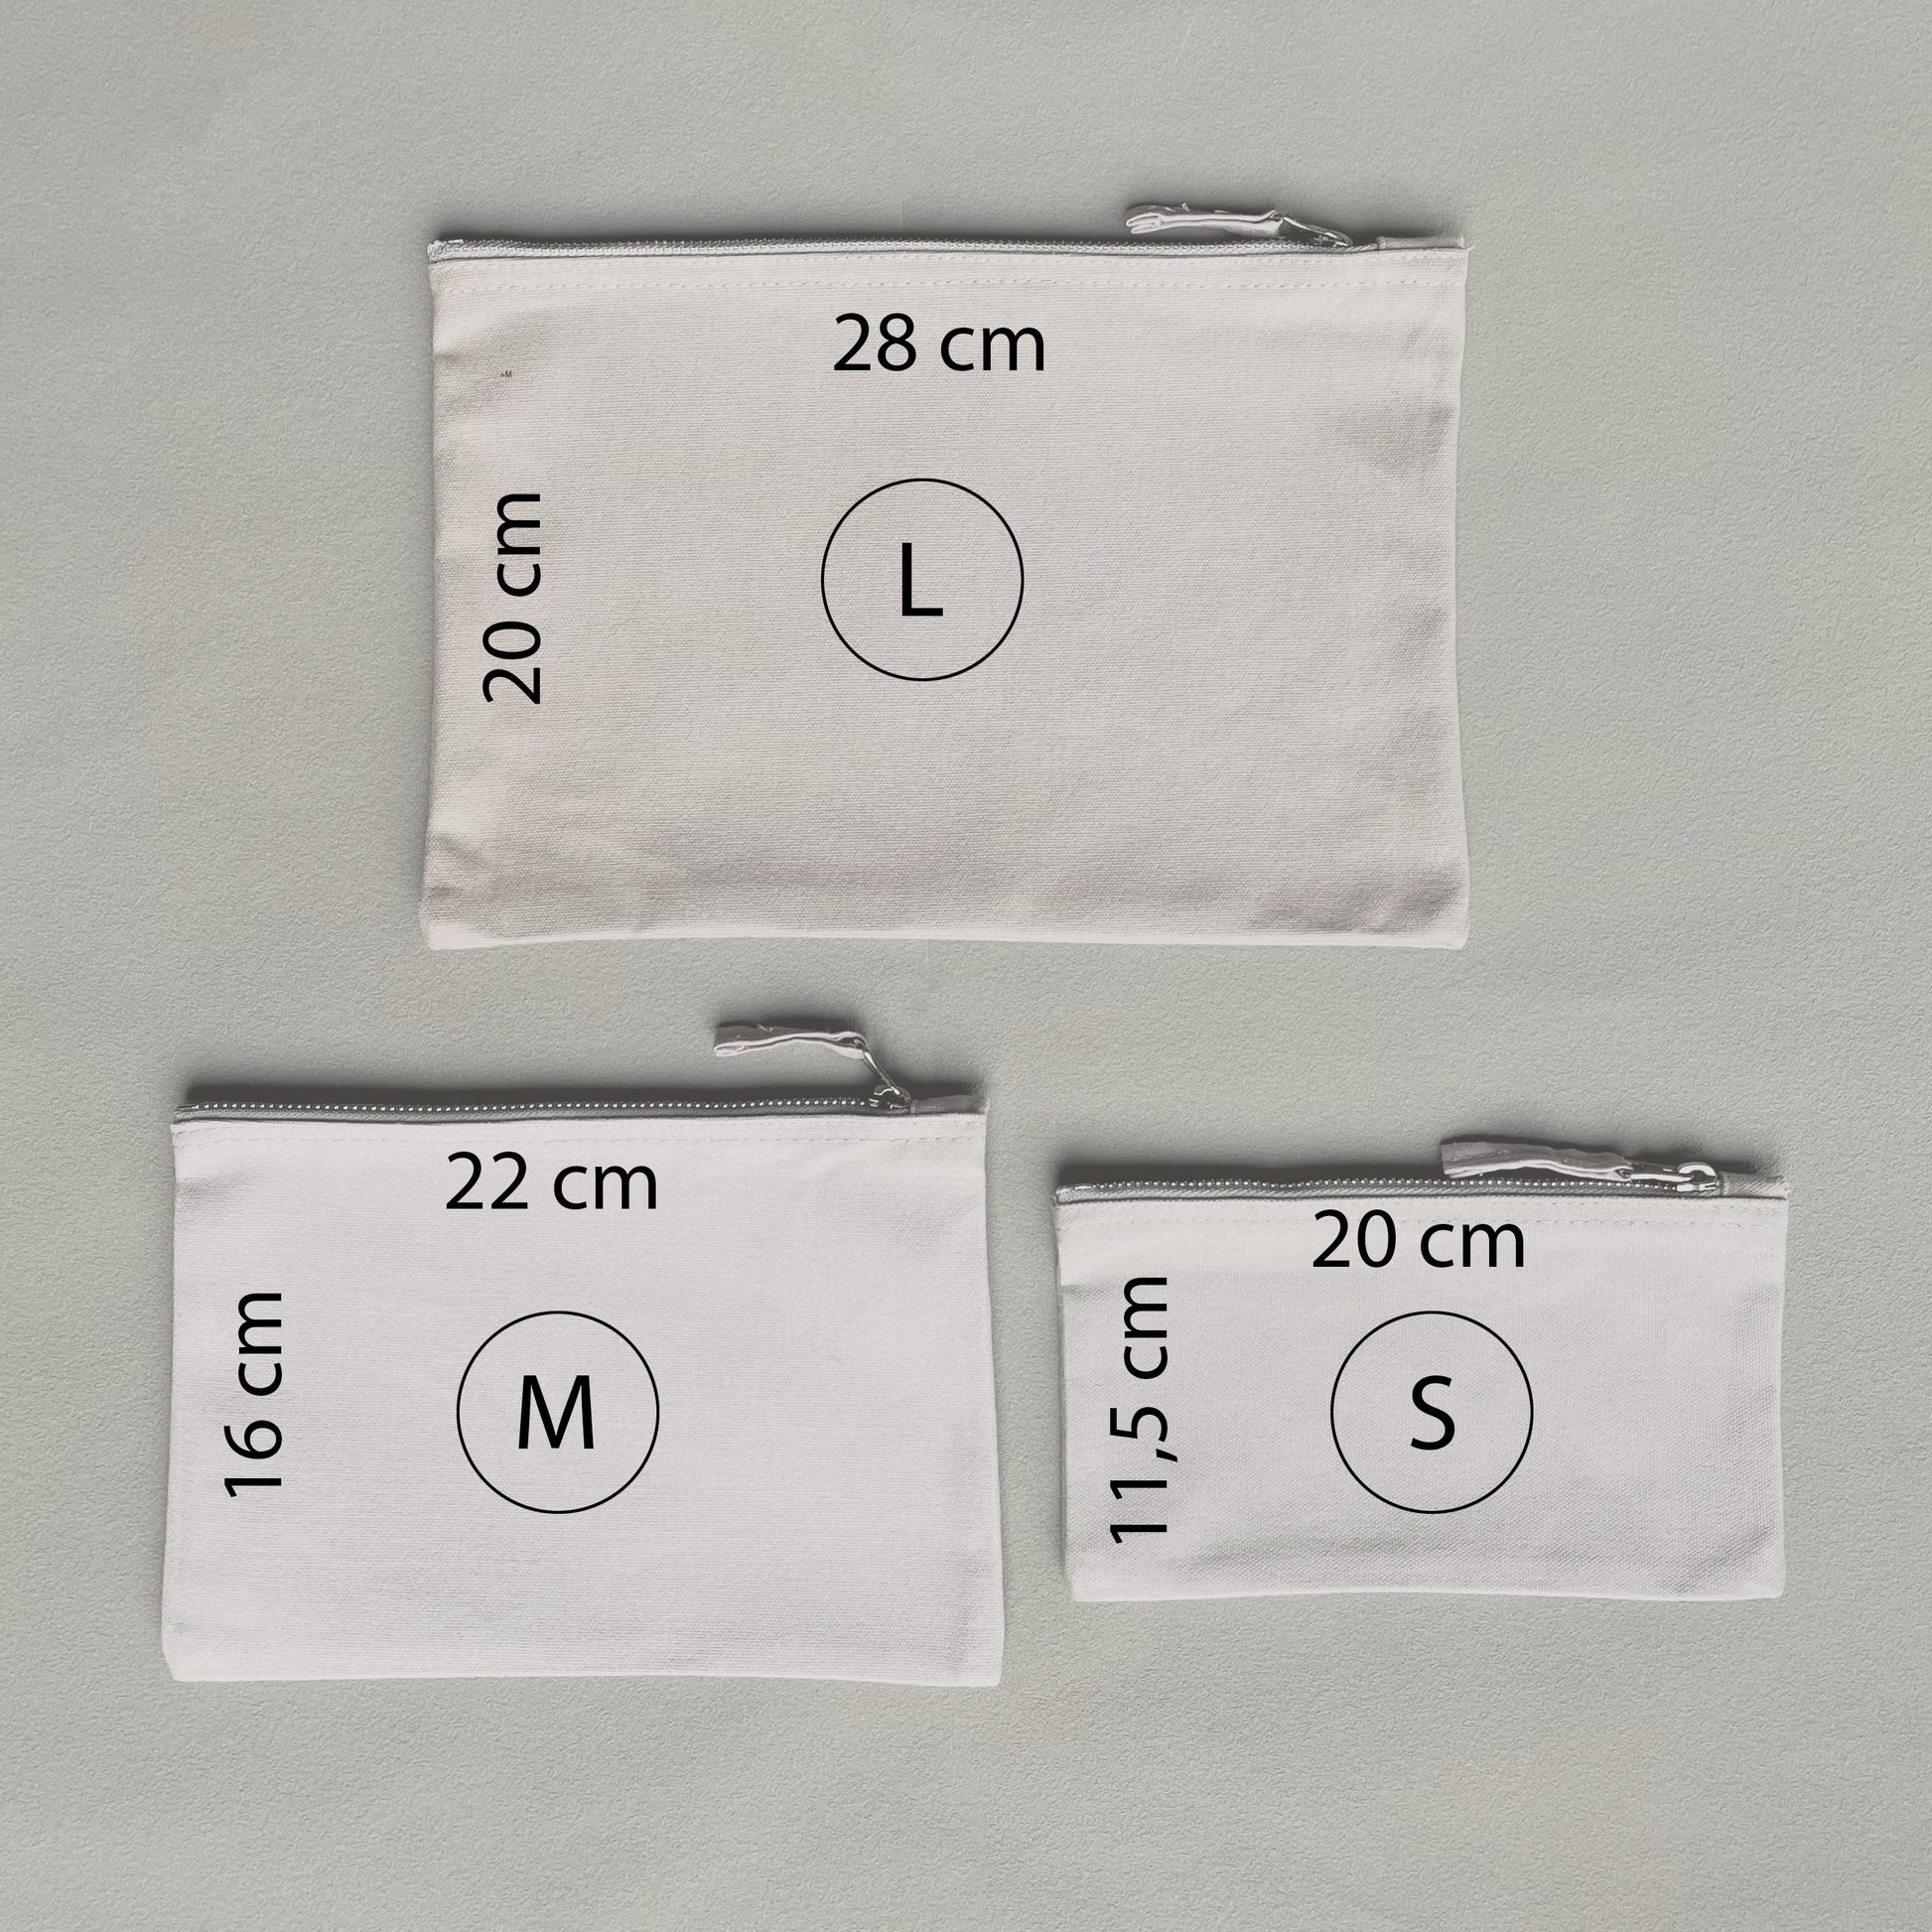 Drei graue Canvas Kosmetik-Taschen im Größenvergleich. Tasche in L (20 x 28cm), in M (16 x 22cm) und in S (11,5 x 20cm)